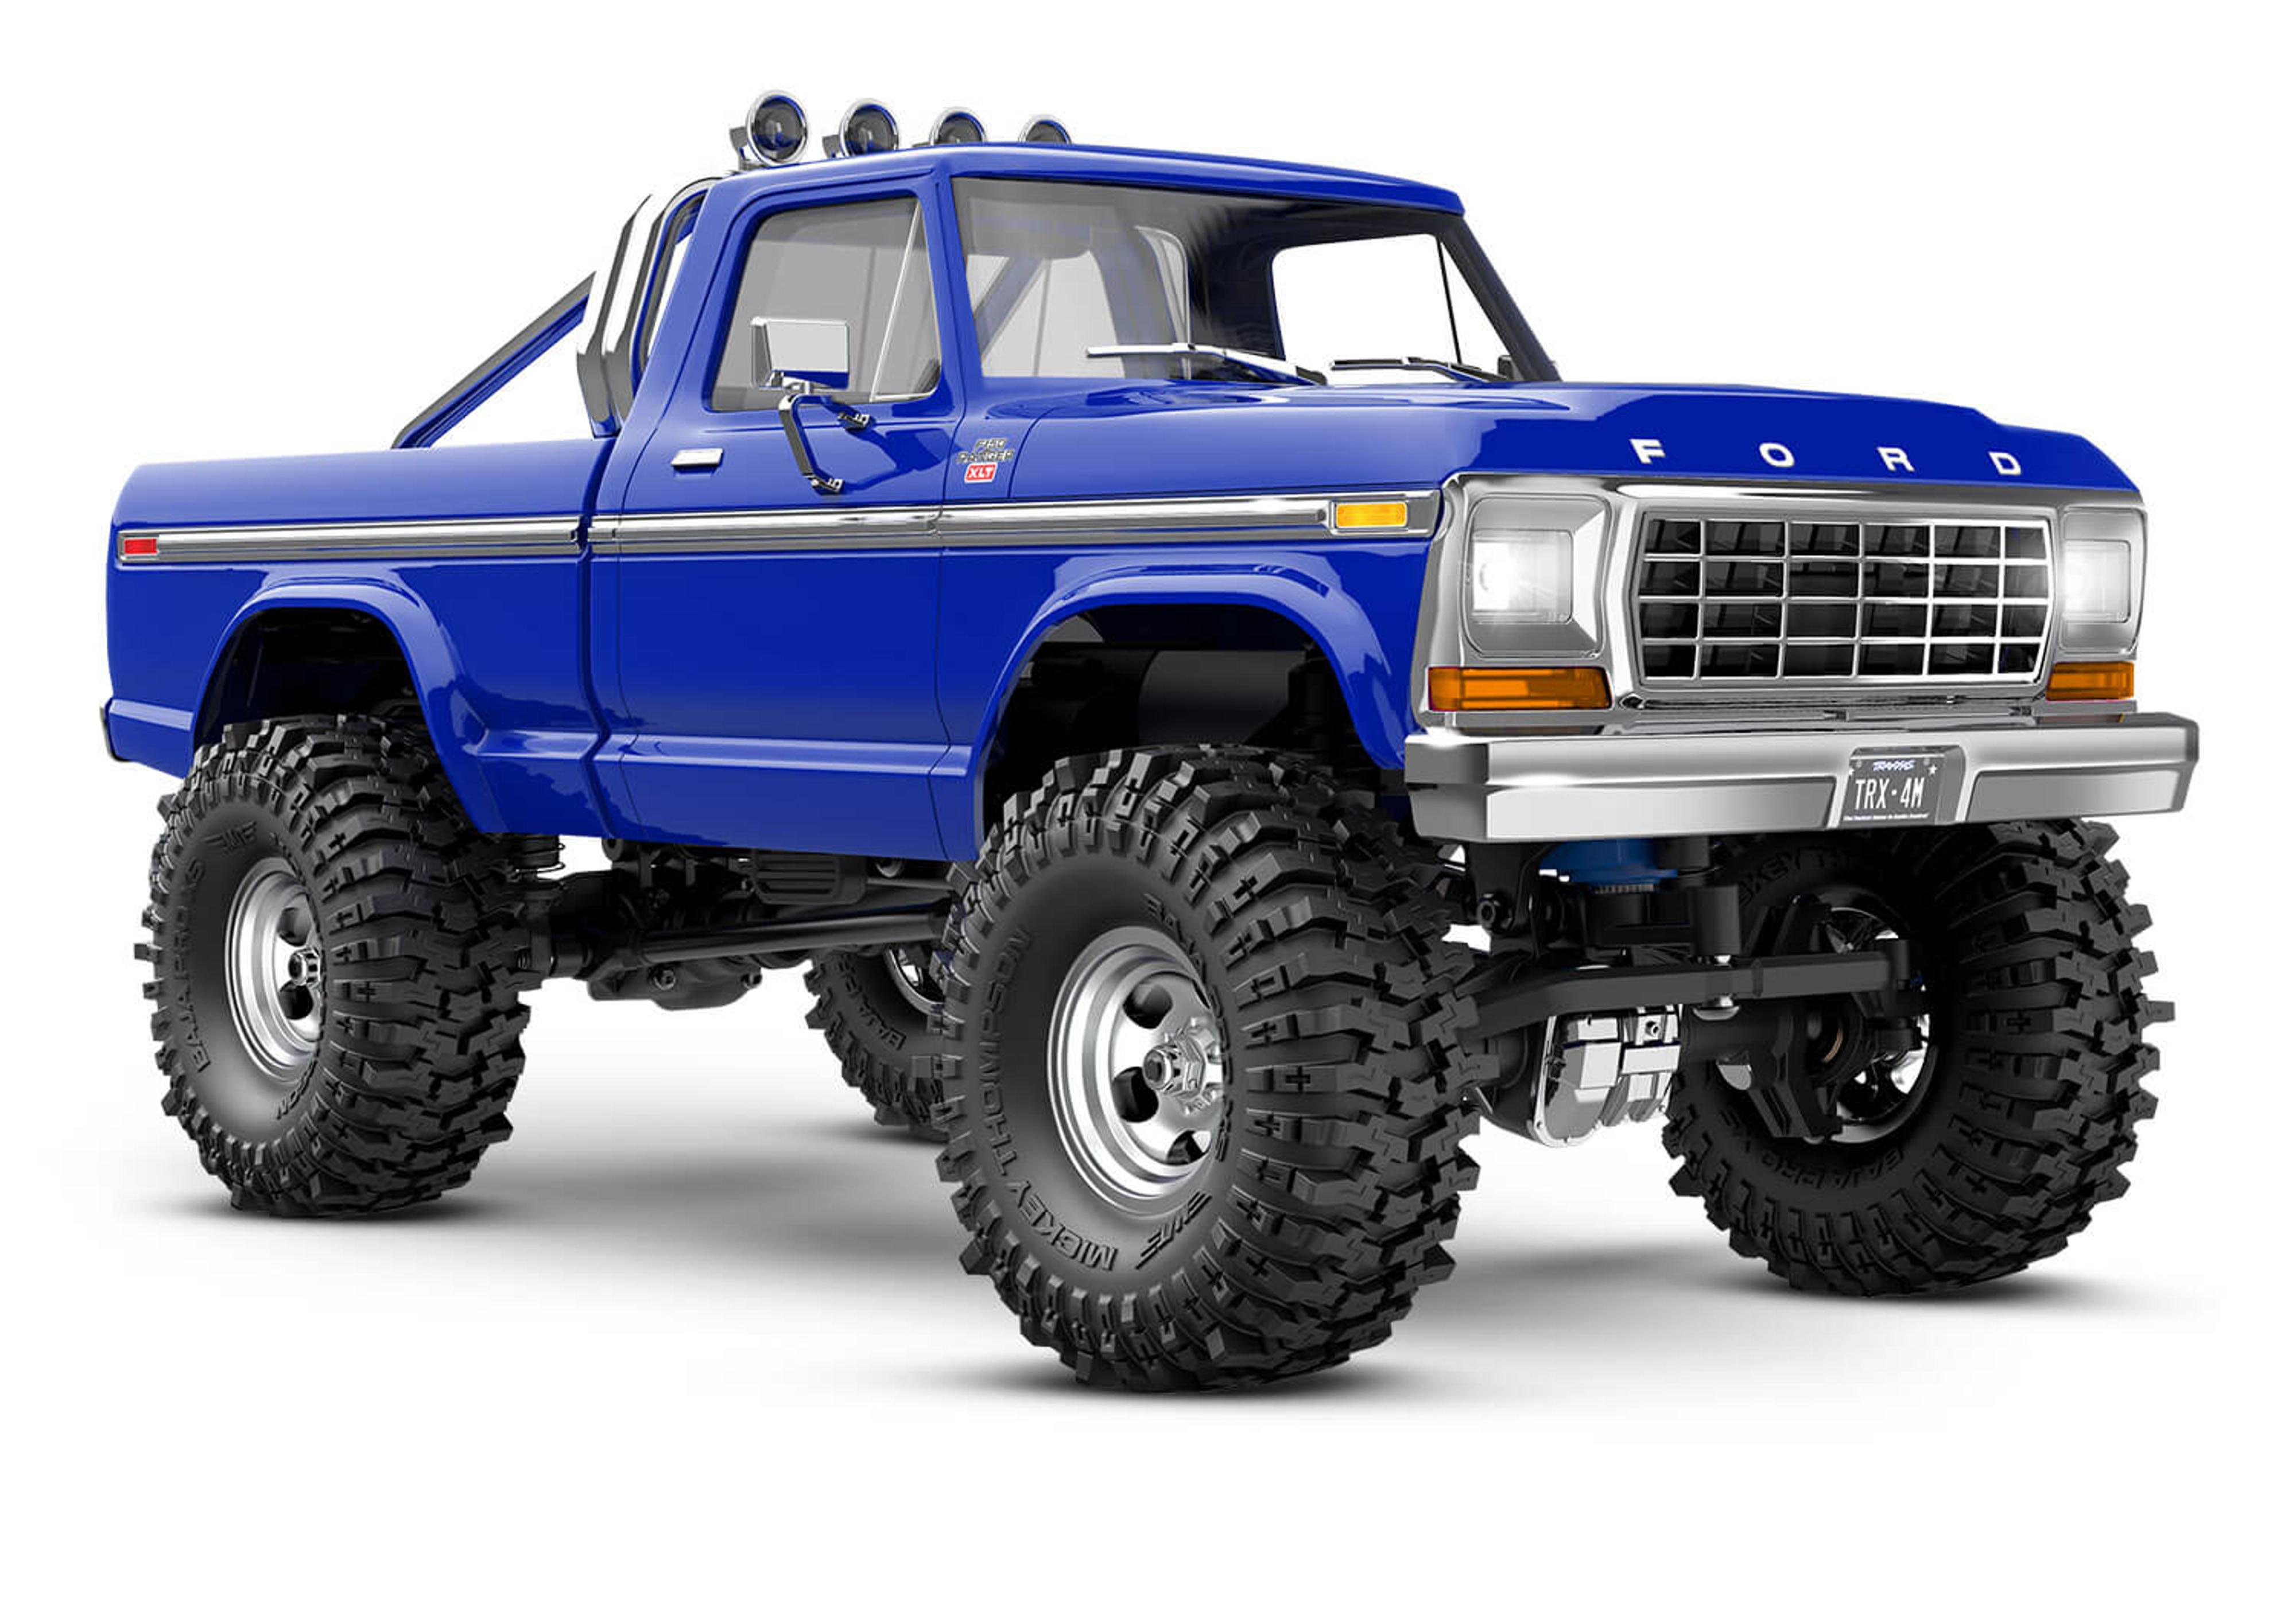 TRX-4M Ford F-150 High Trail Edition RTR R/C Crawler Truck (Blue)